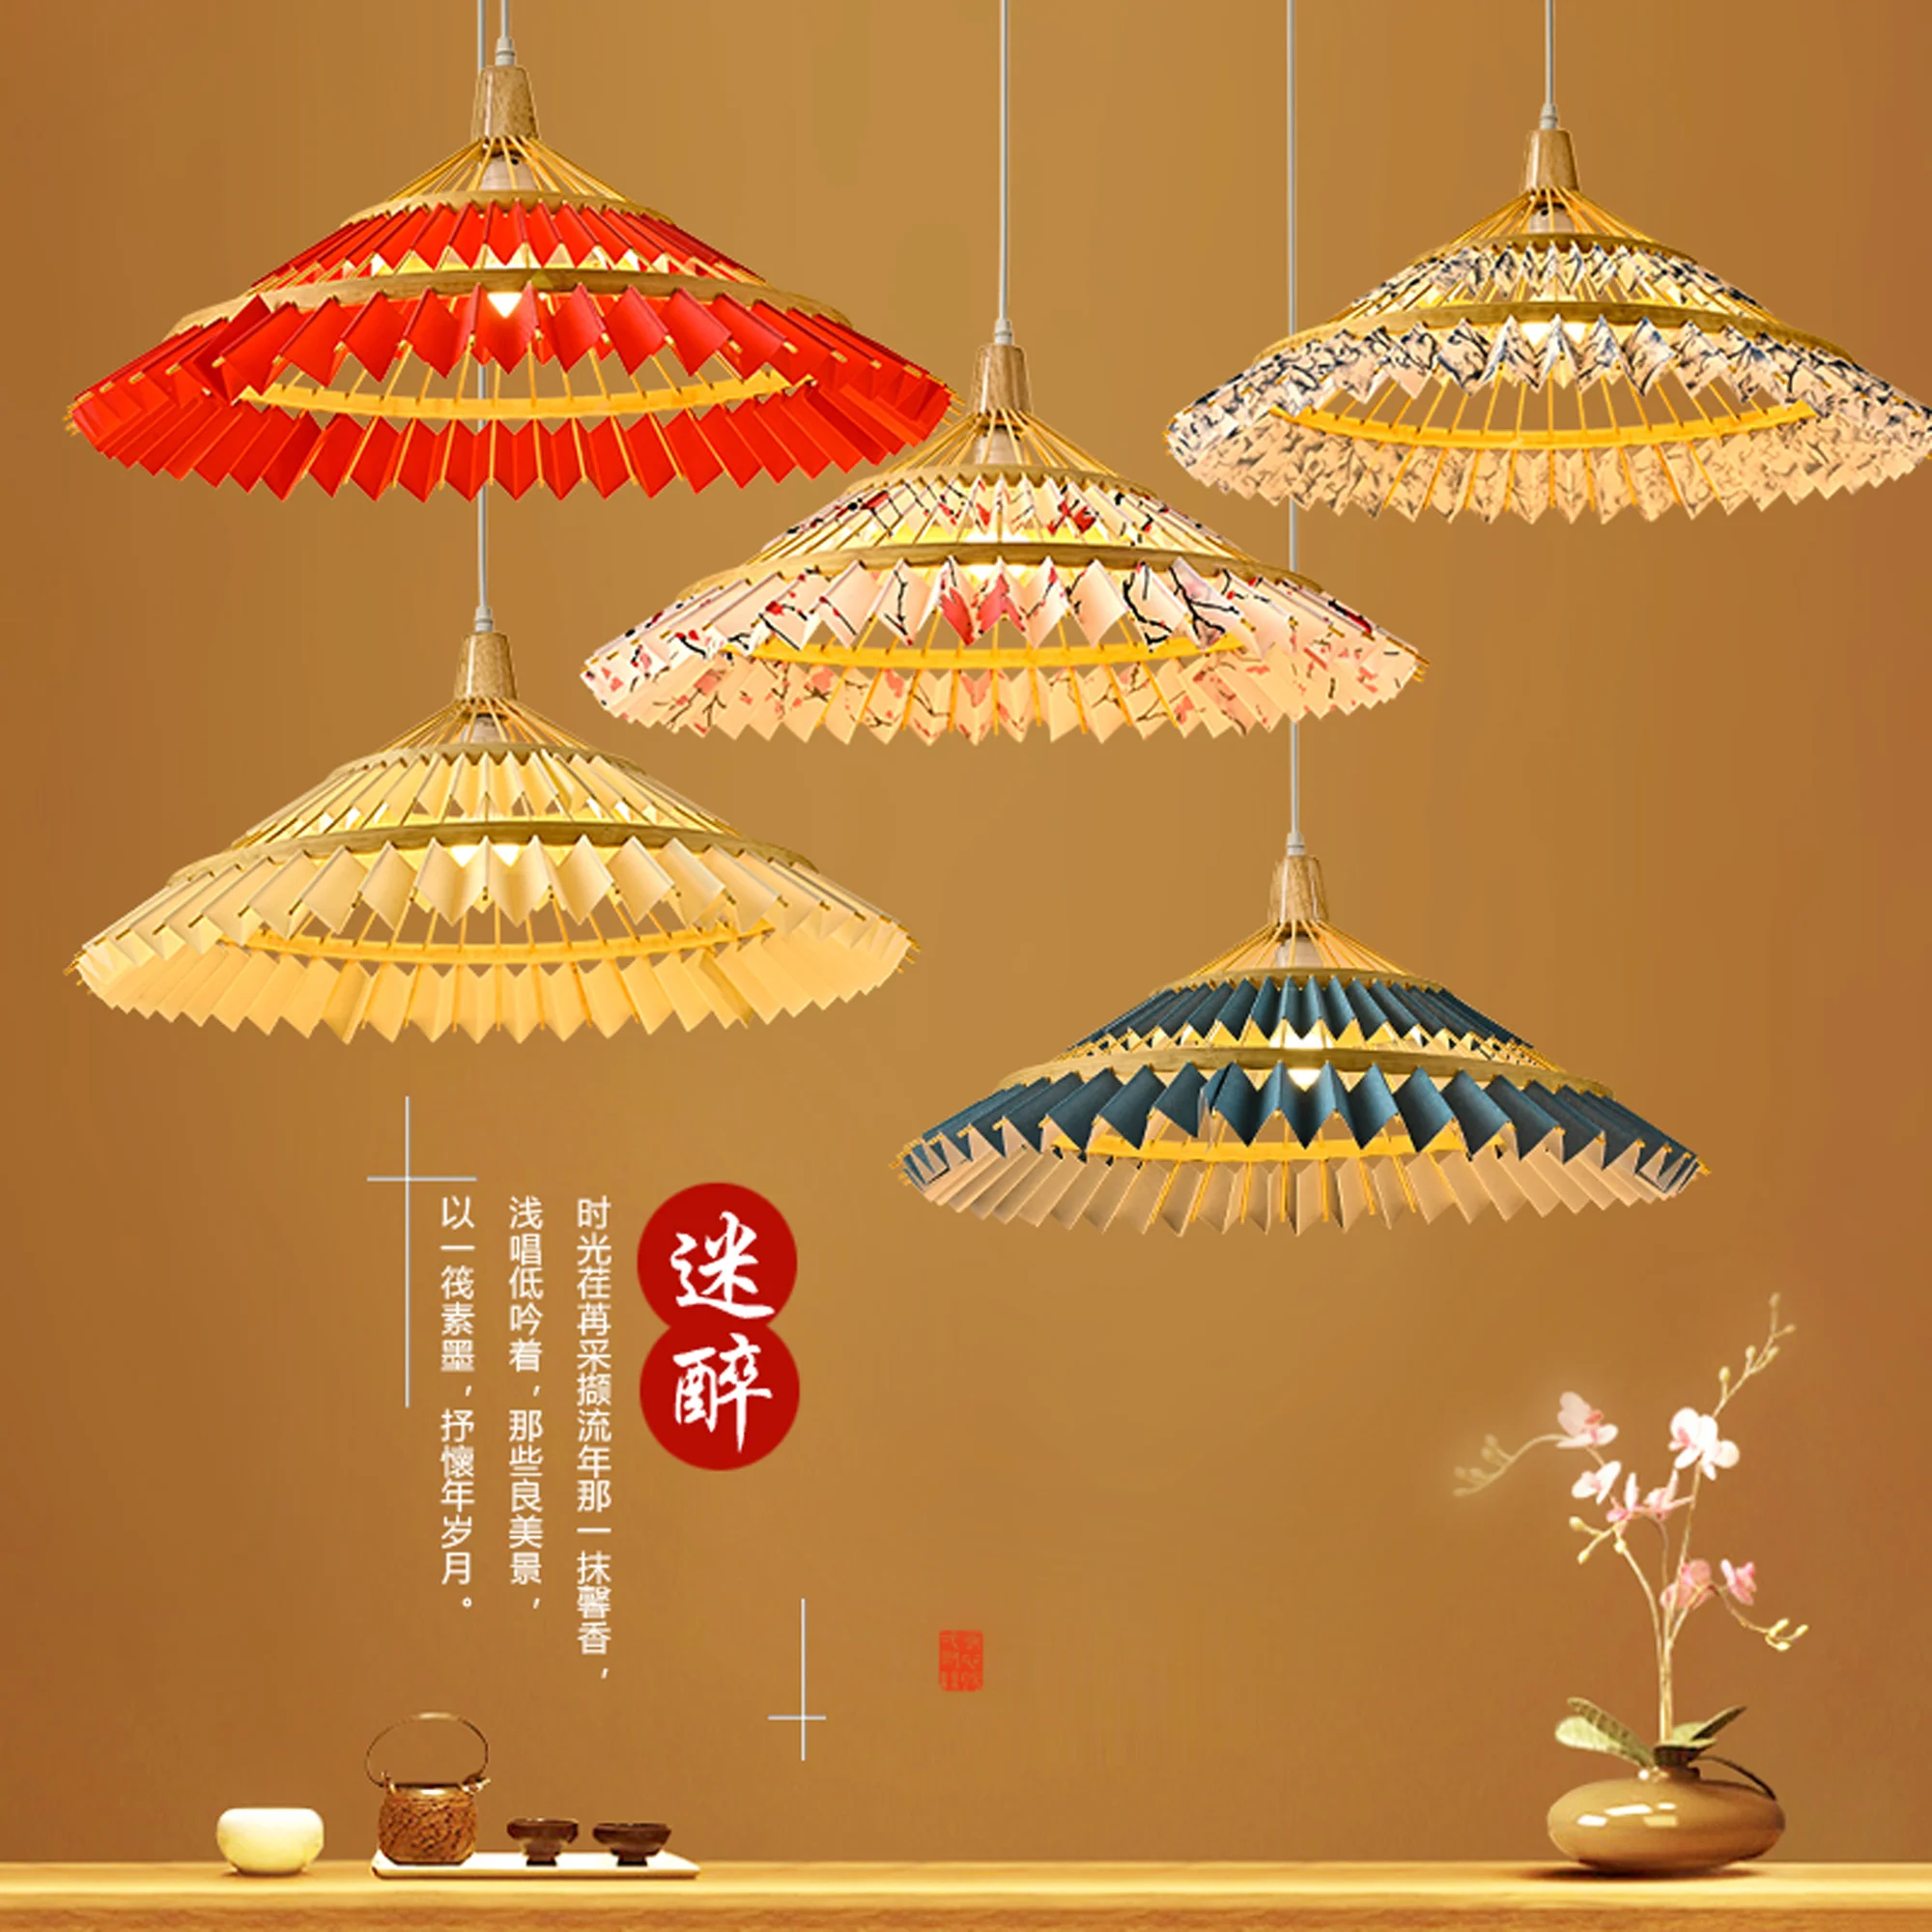 Bamboo hand-made umbrella lamp restaurant Chinese Zen lamp teahouse Hotel B & B hot pot shop Chandelier